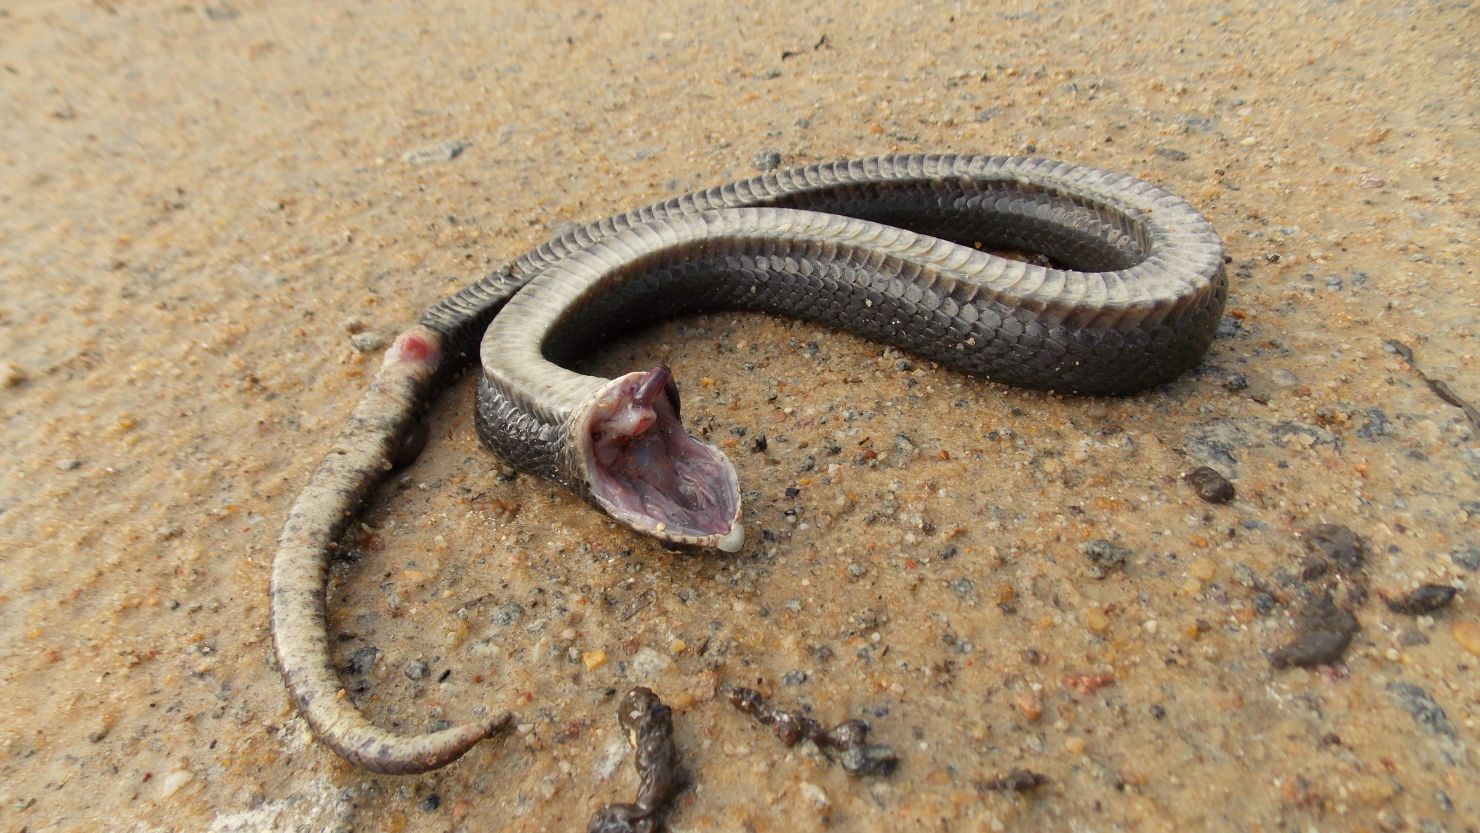 Eastern Hognose Snake - Playing Dead